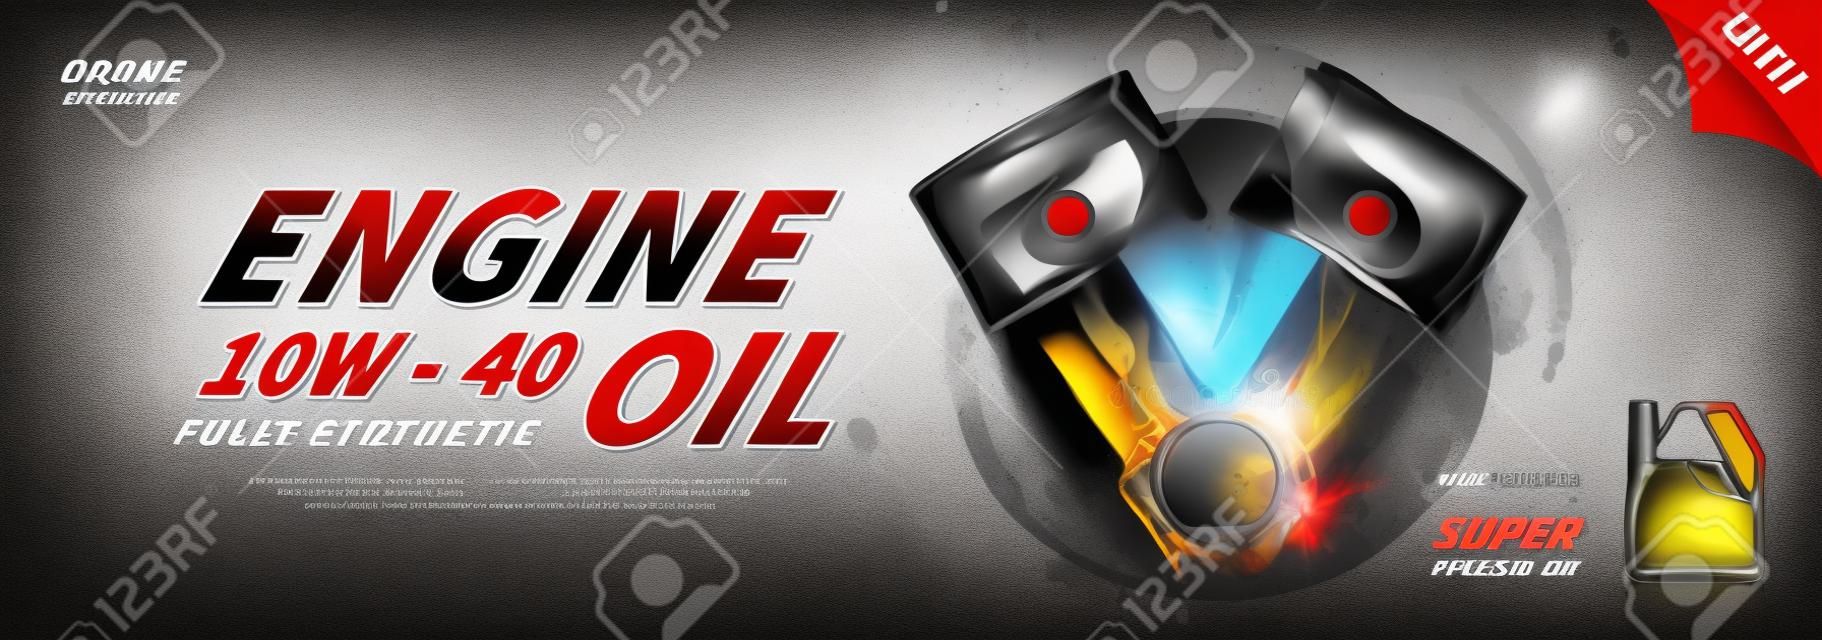 Werbebanner für Motoröl. Vektorillustration mit realistischen Kolben und Motoröl auf hellem Hintergrund. 3D-Anzeigenvorlage.